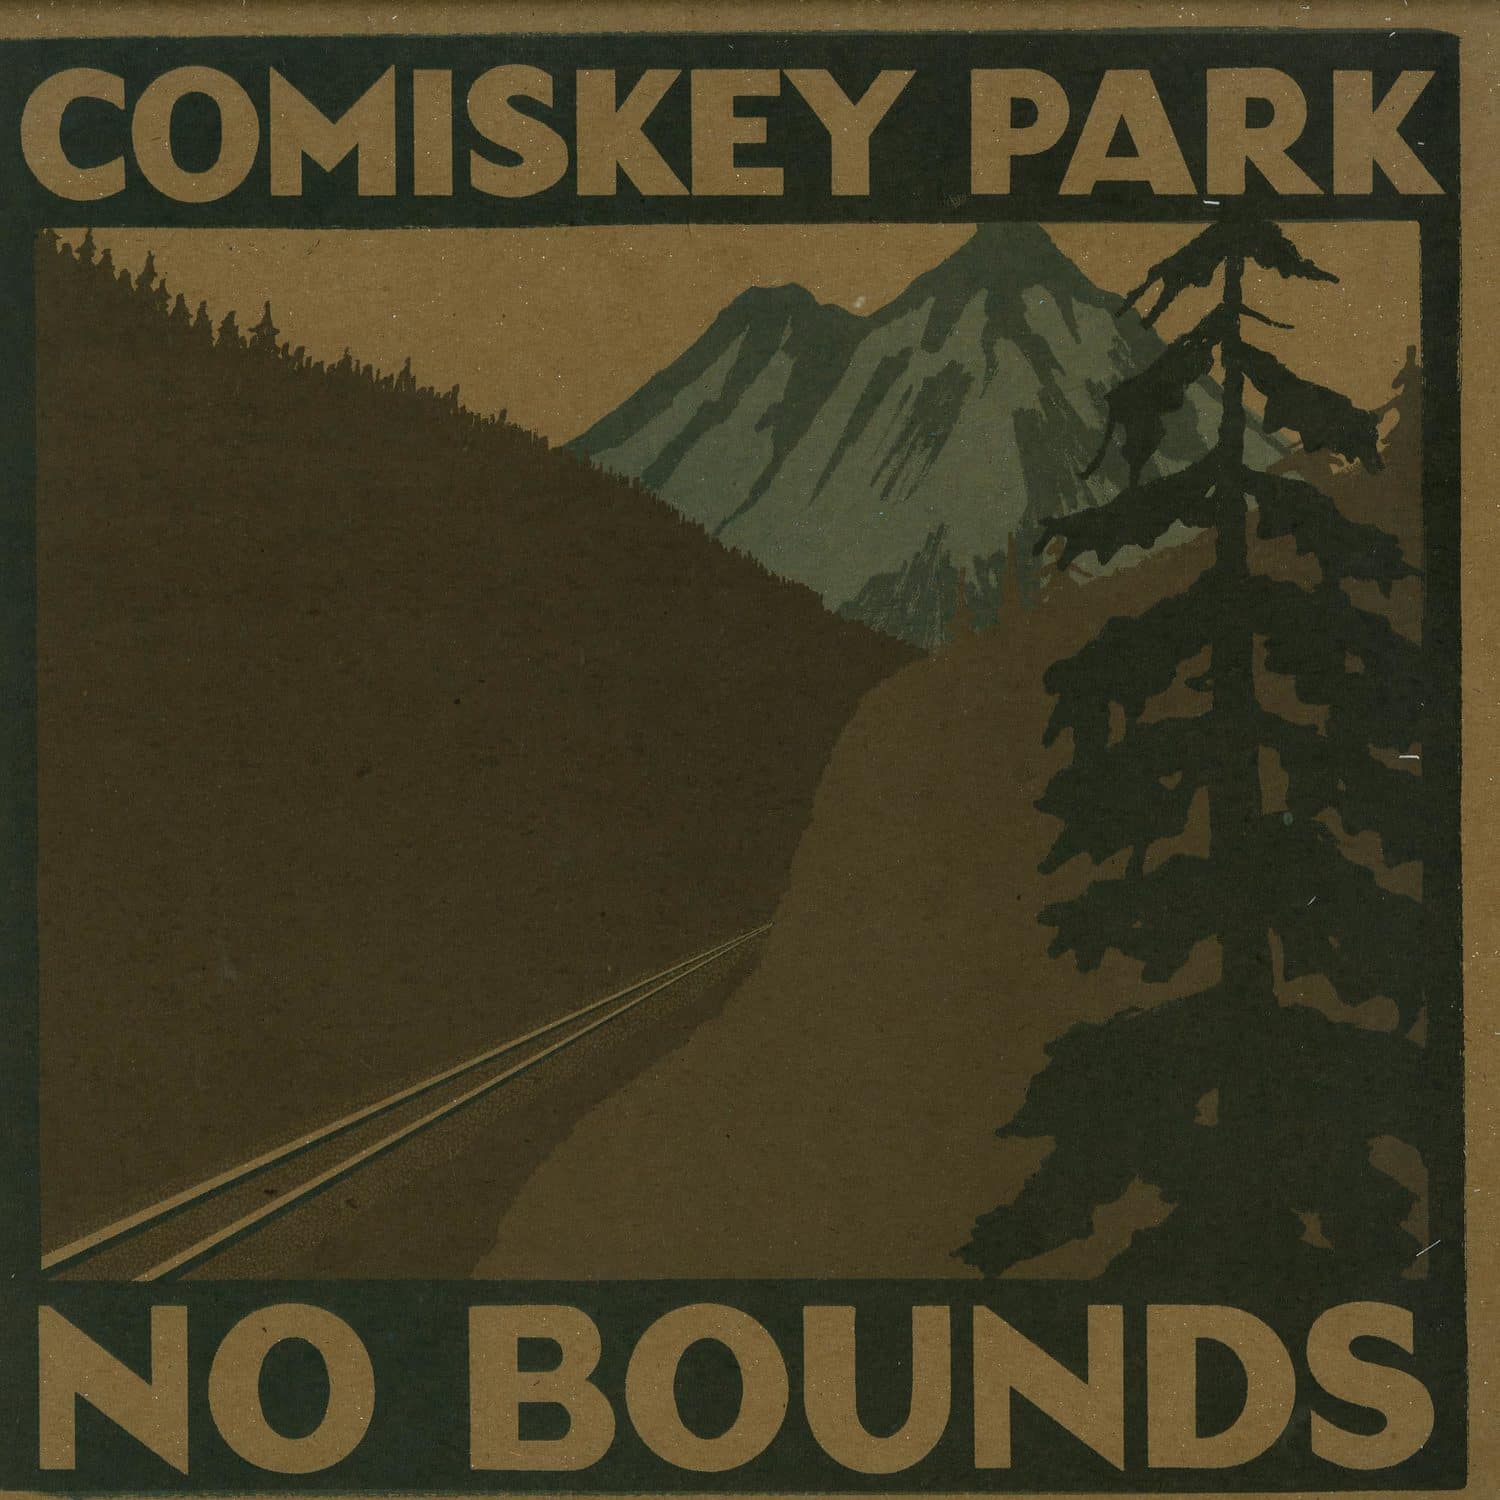 Comisky Park - NO BOUNDS